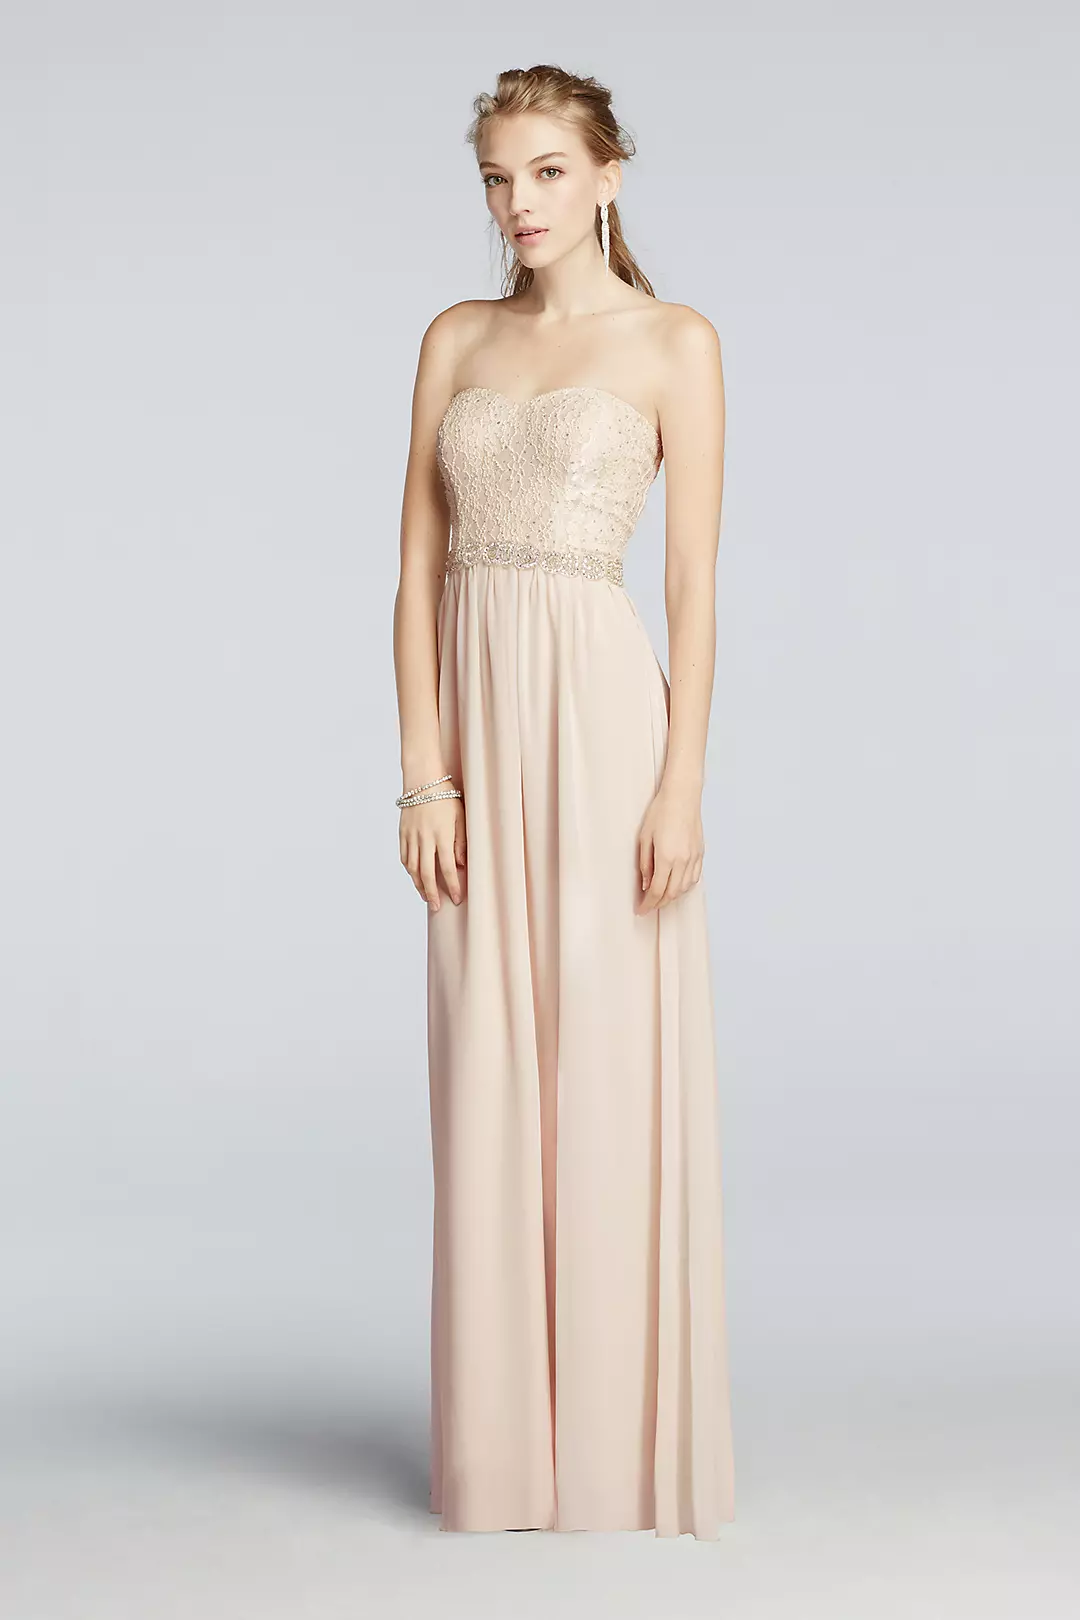 Strapless Chiffon Pastel Prom Dress  Image